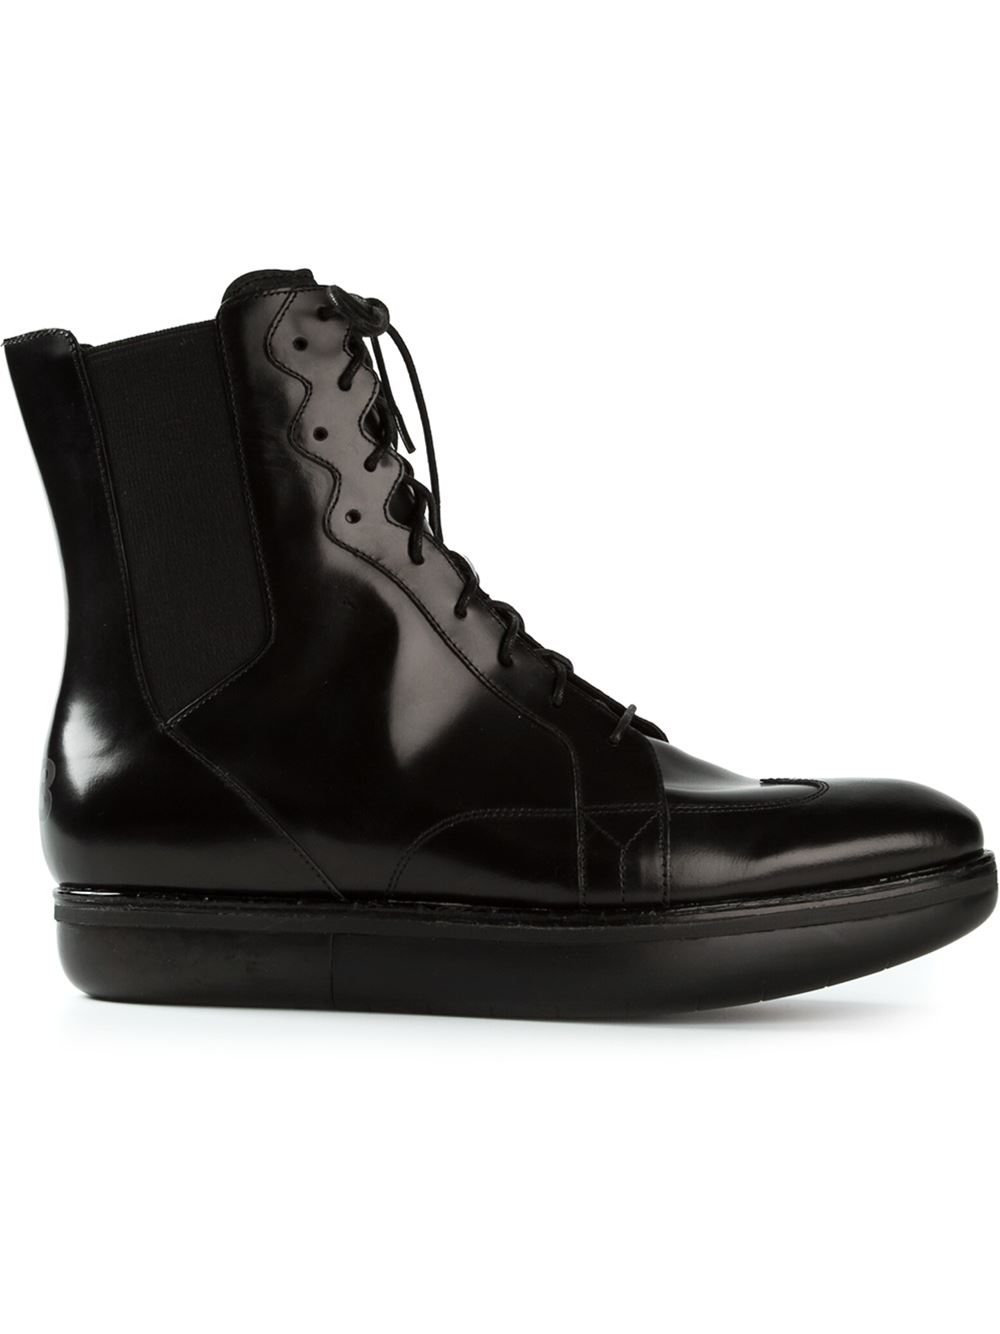 Lyst - Y-3 Platform Boots in Black for Men